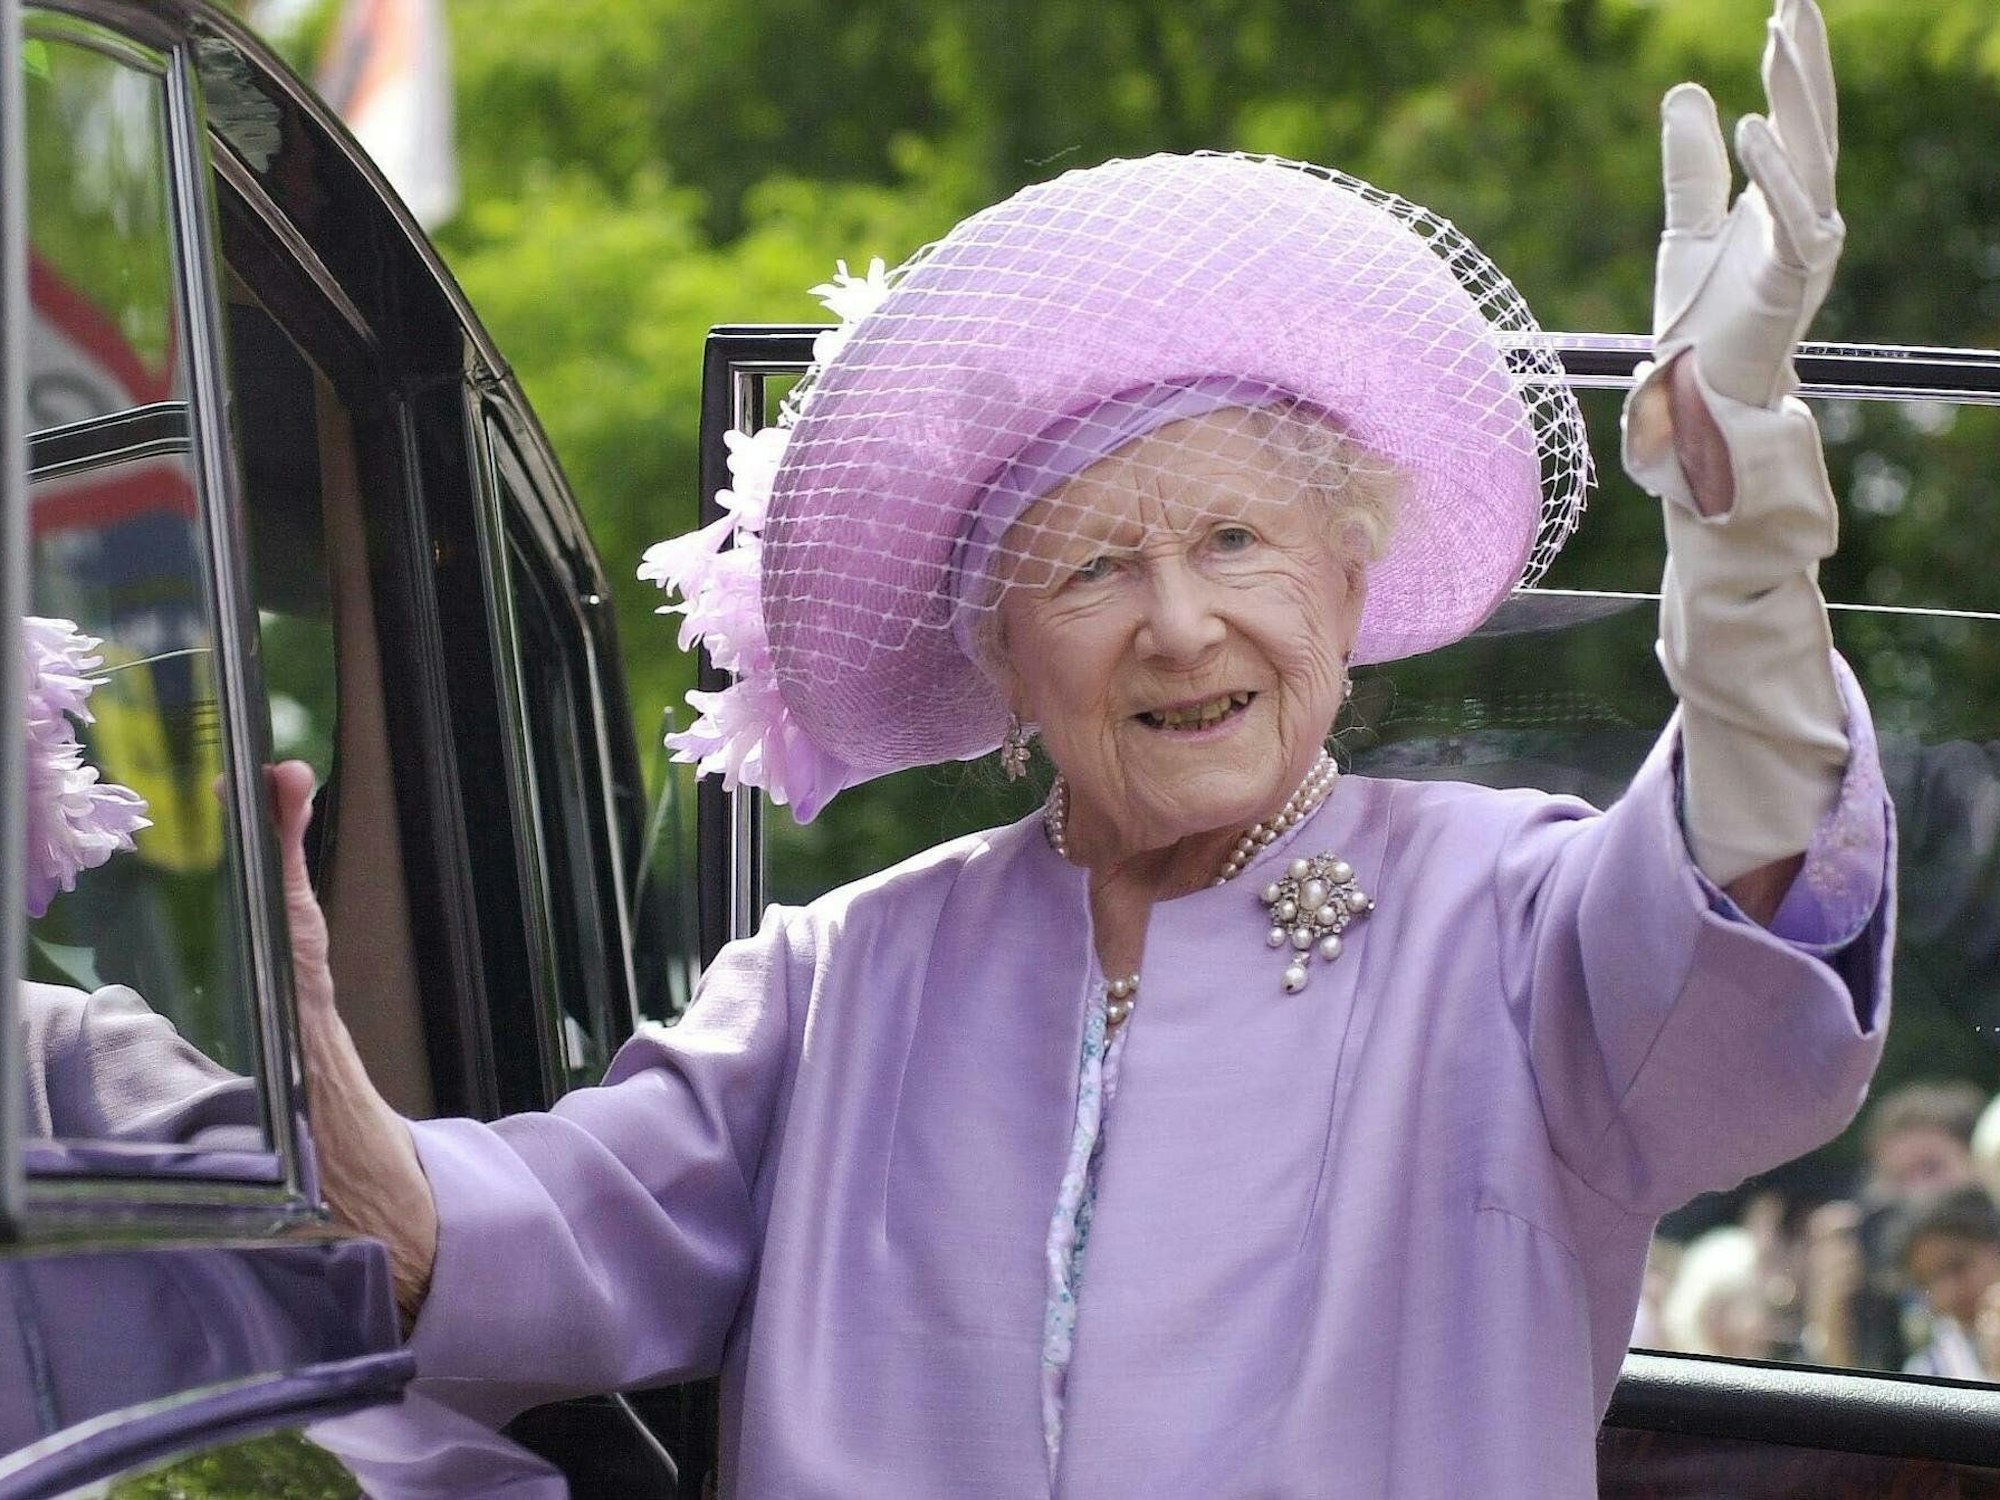 Queen Mum (*4. August 1900, †30. März 2002), die Großmutter von König Charles III., erkrankte an Darmkrebs.